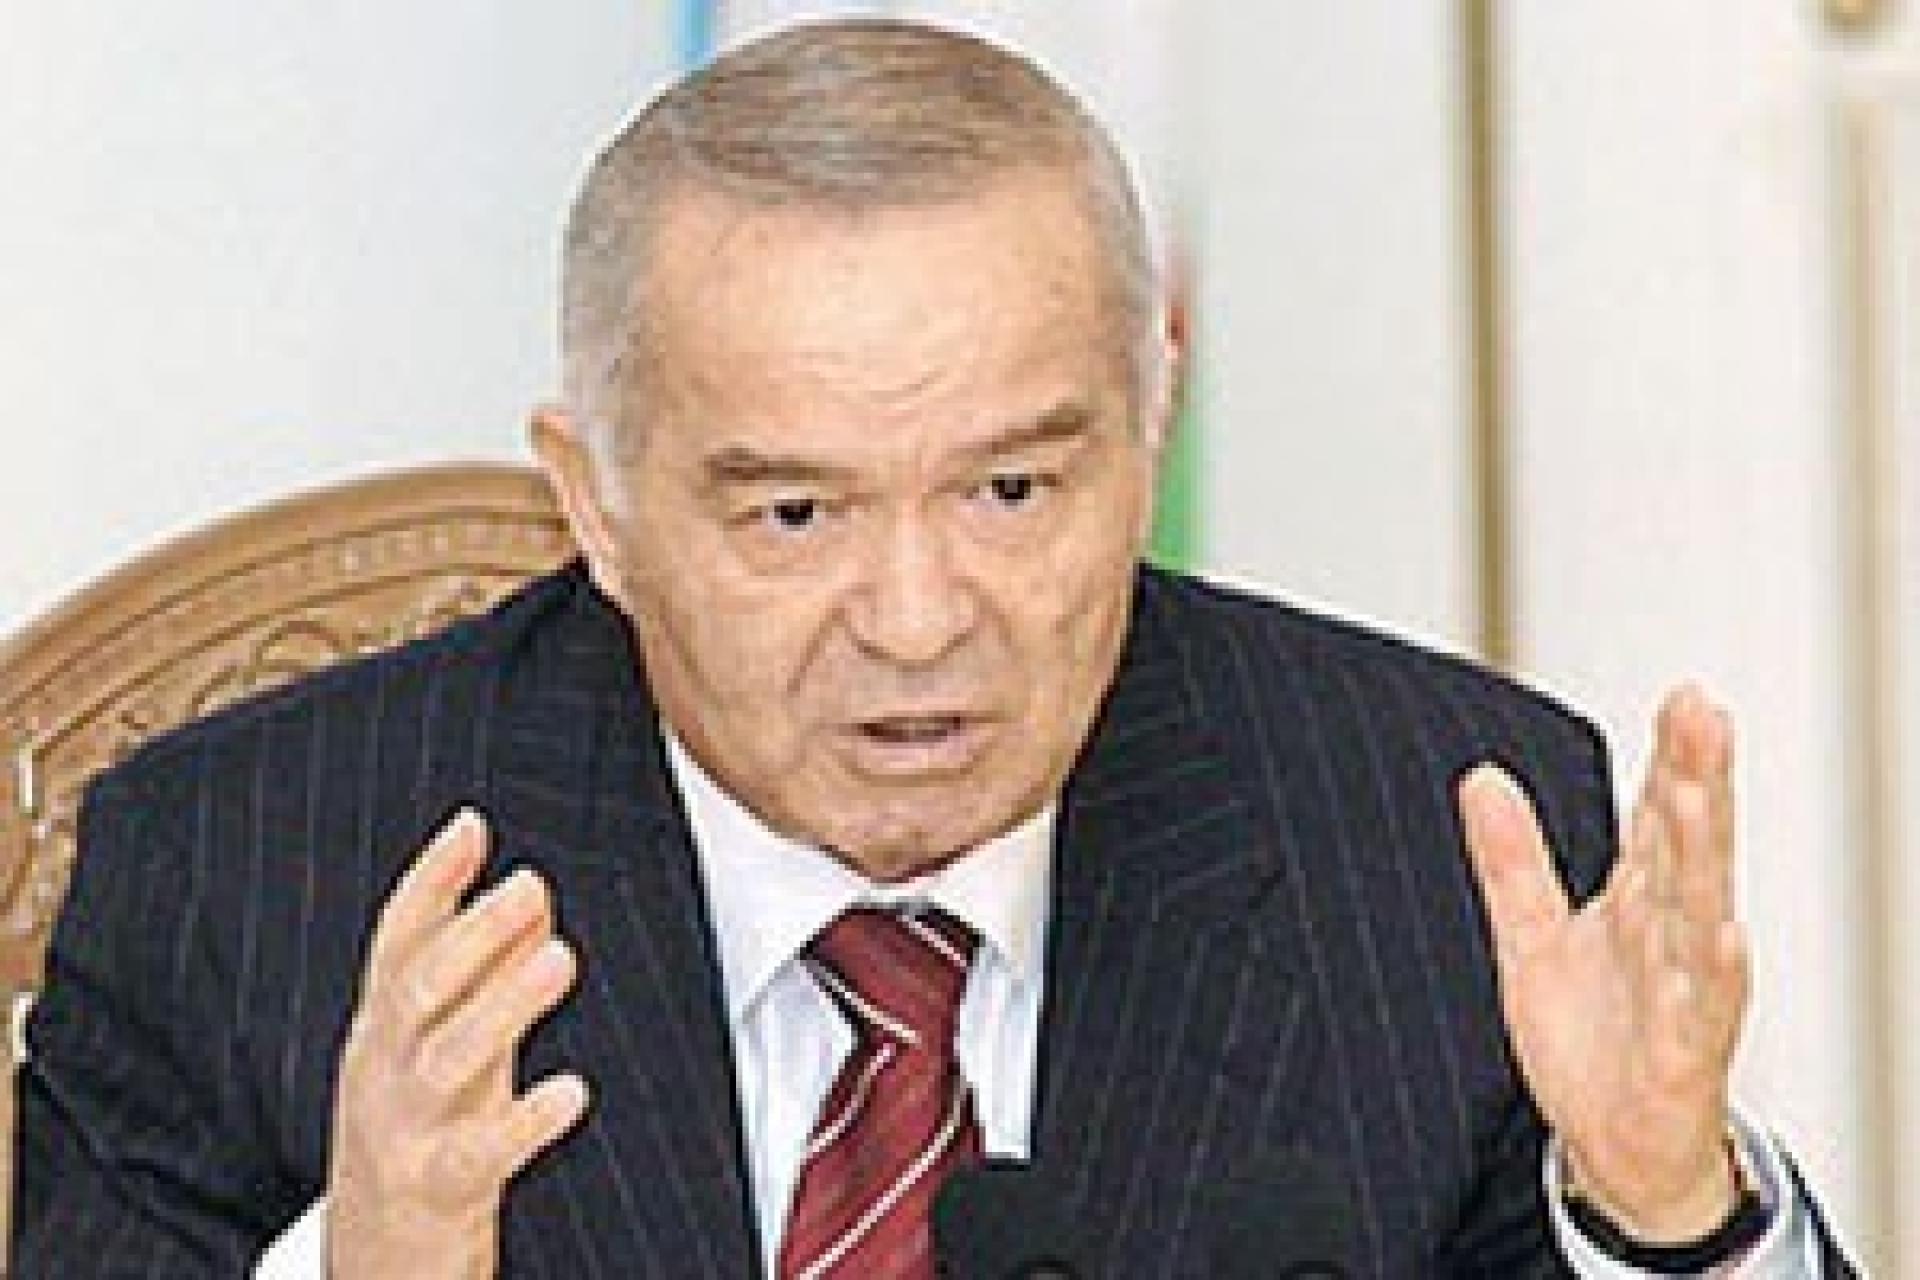 Внутриэлитный конфликт в Узбекистане может привести к смене режима